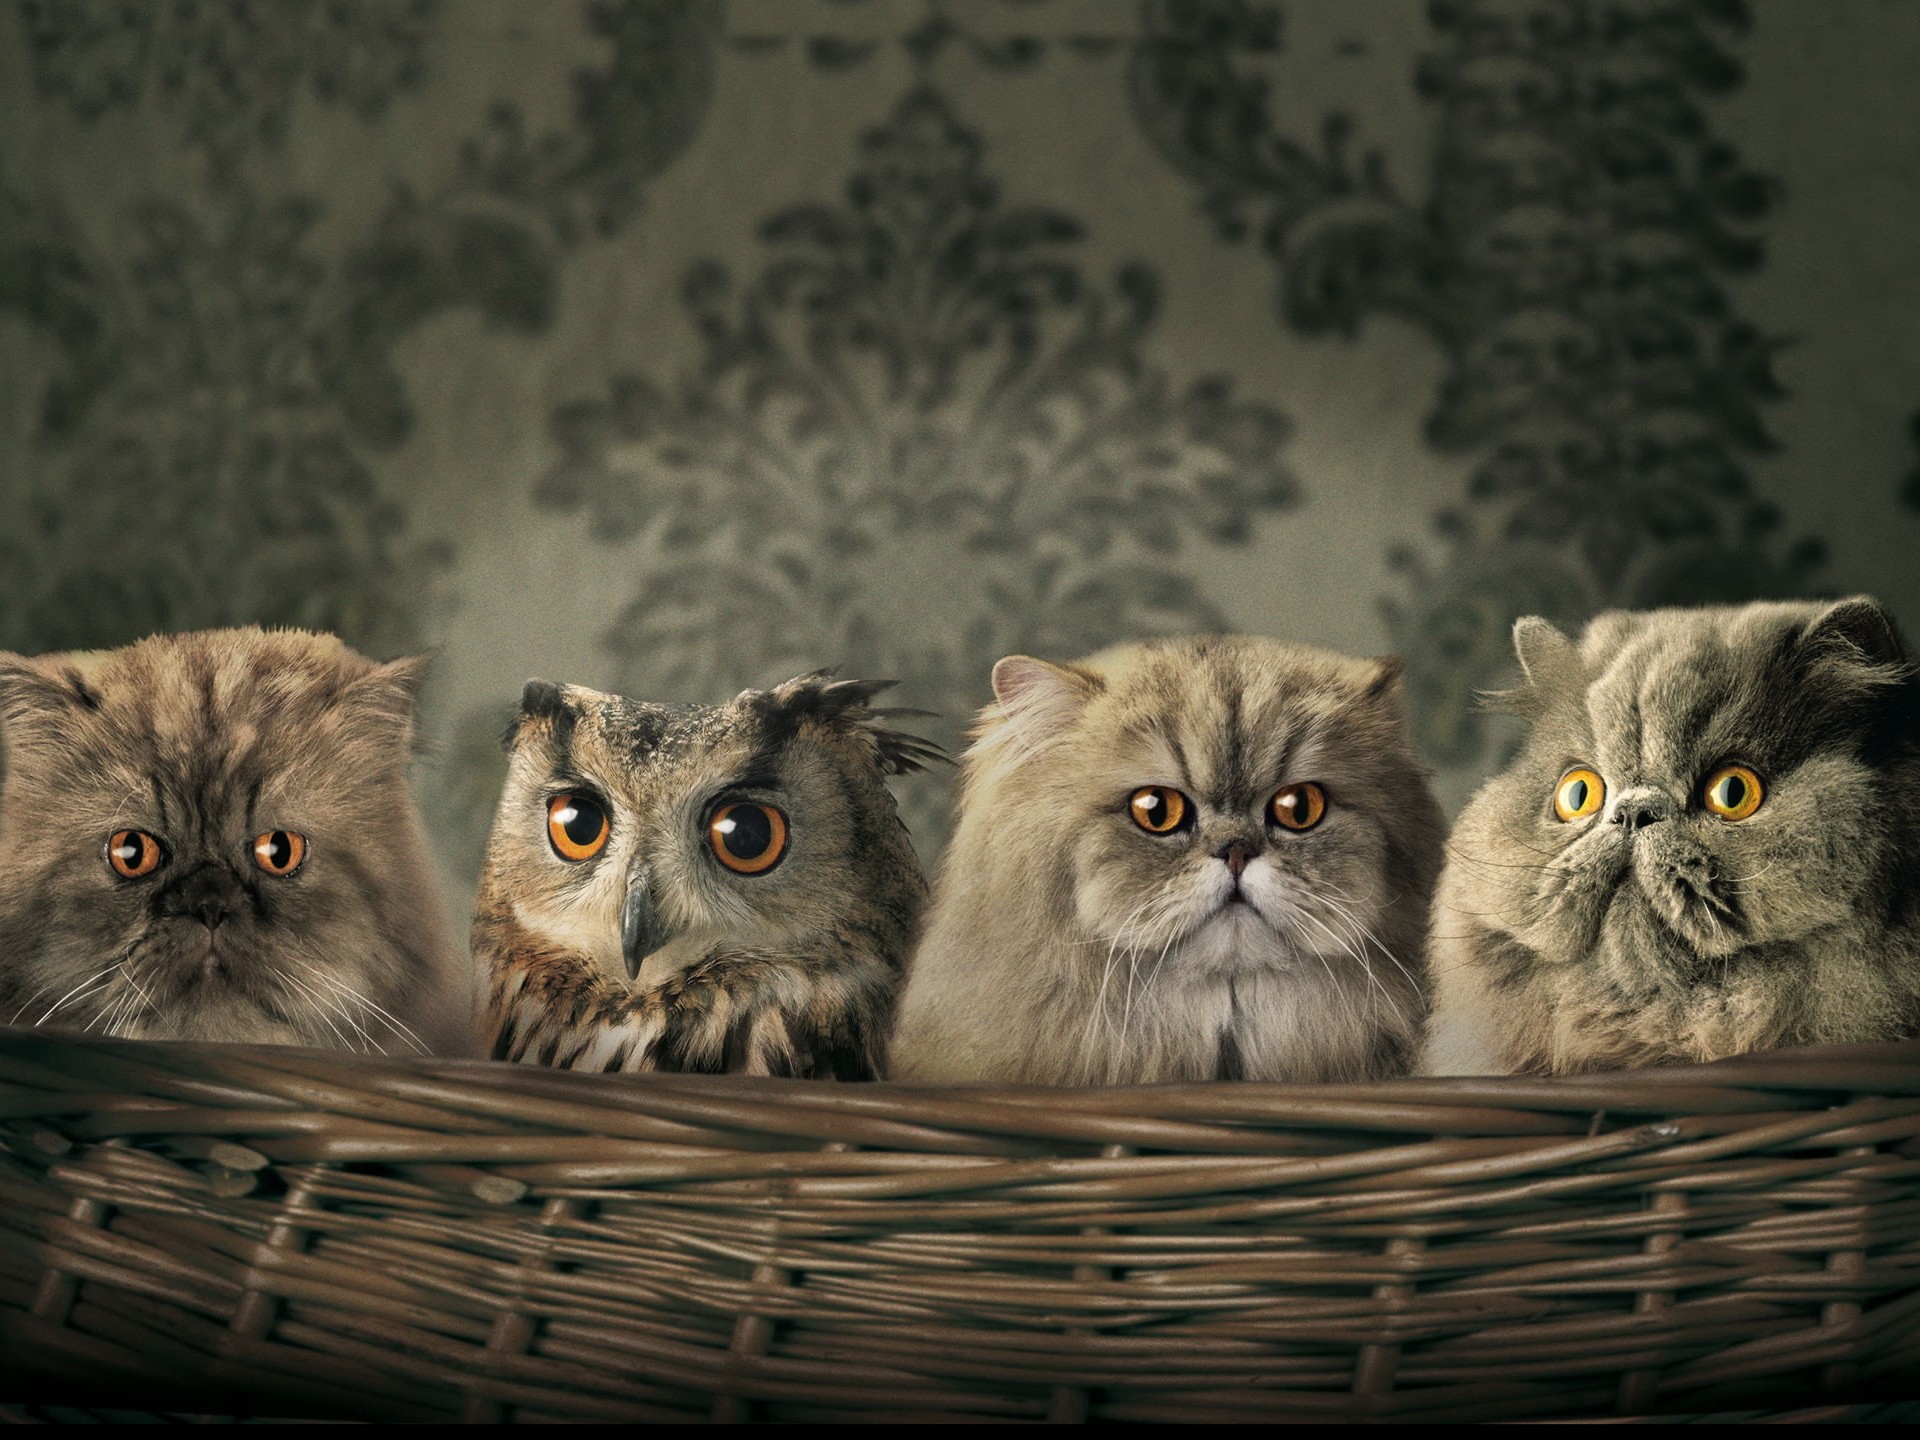 artistic, cats, animals, owls - desktop wallpaper